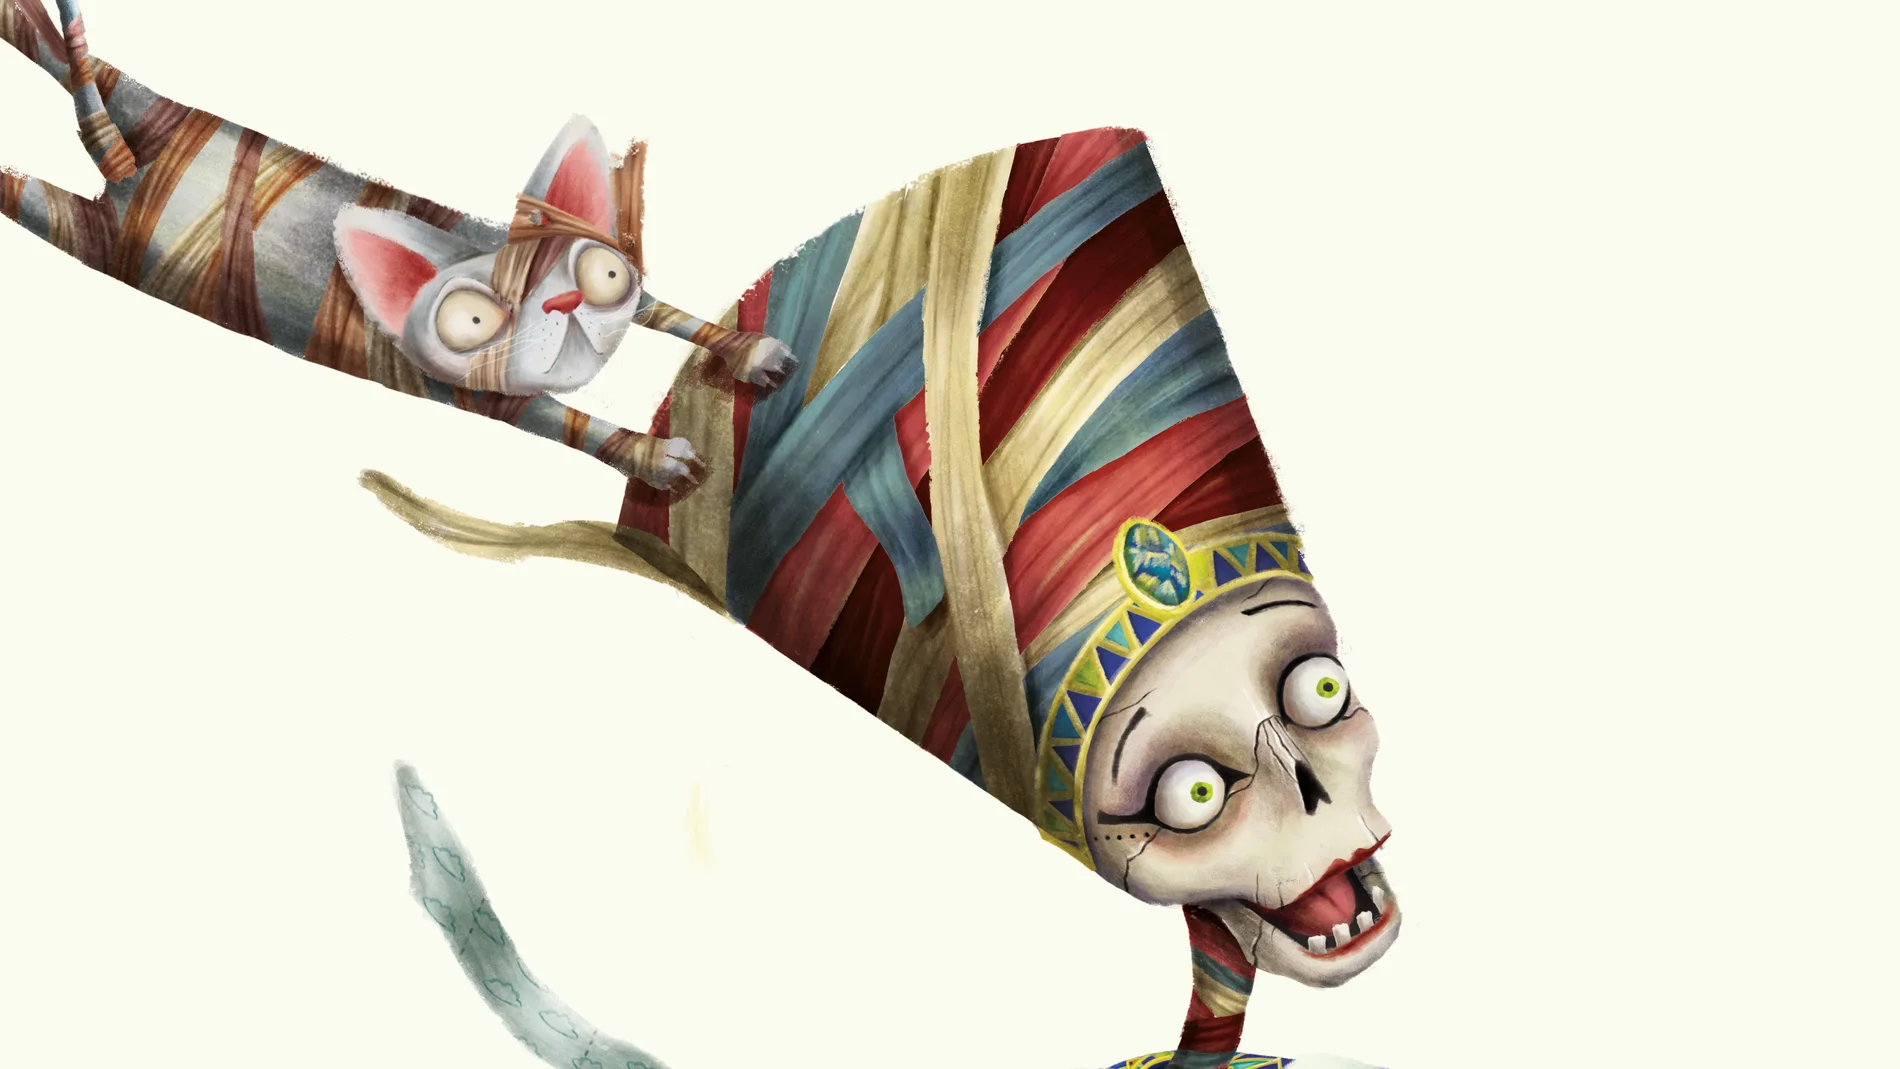 La momia es uno de los villanos míticos que reinventan los autores para el proyecto benéfico